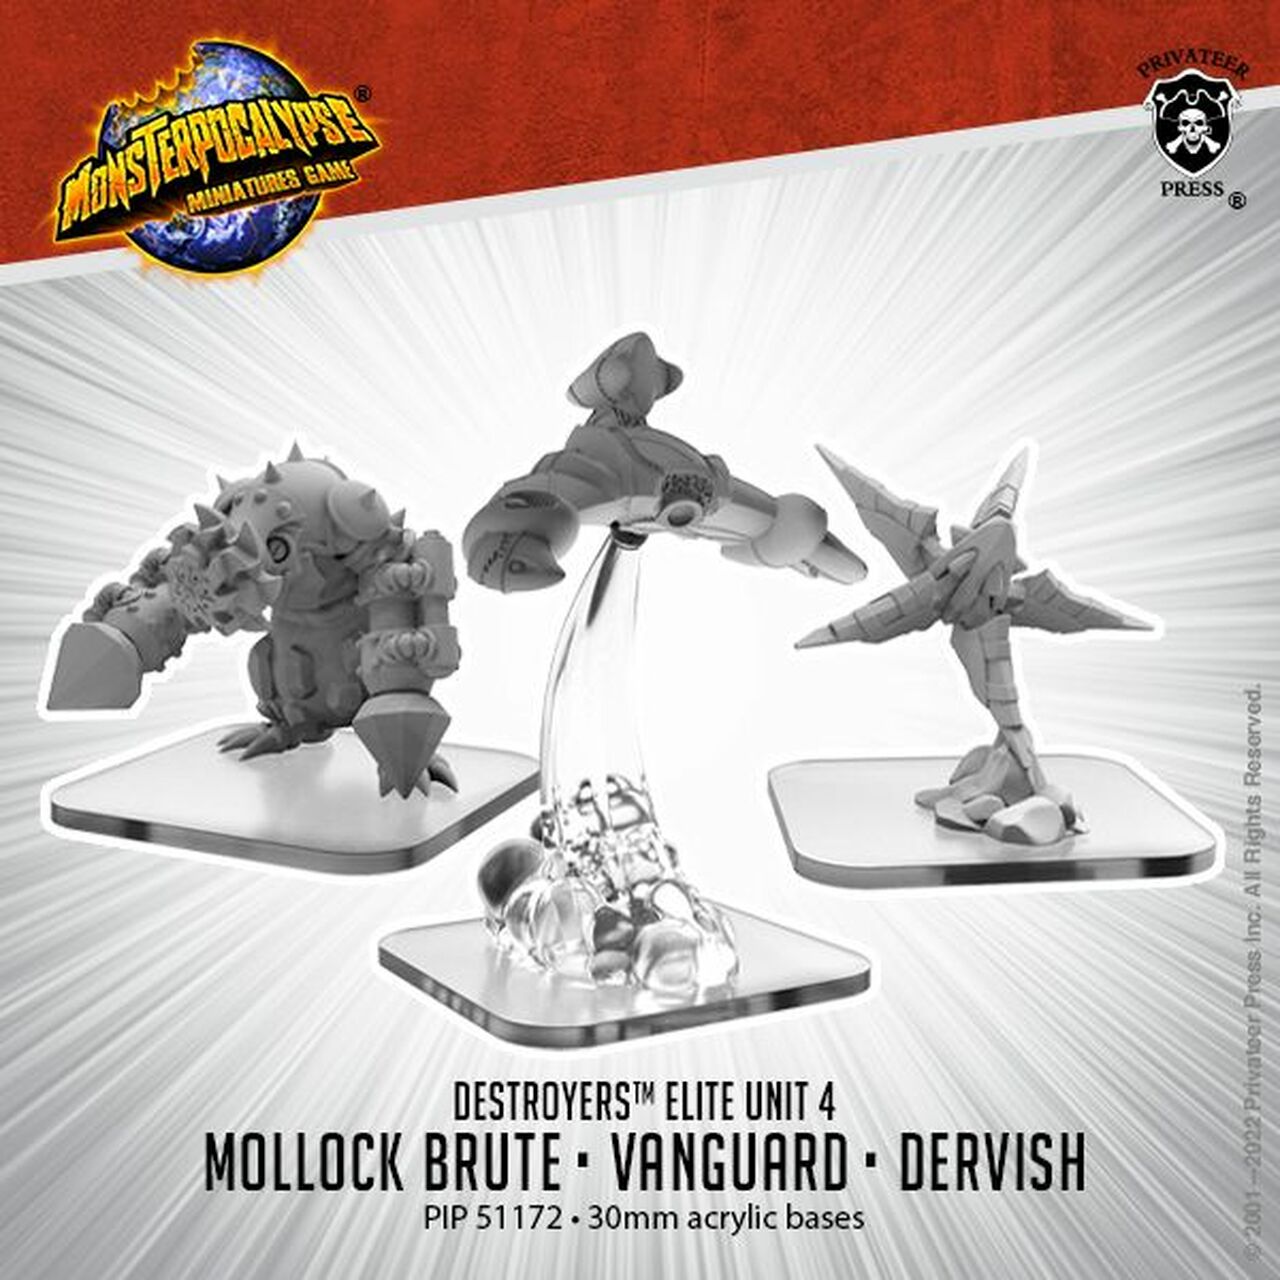 画像1: Monsterpocalypse: Dervish, Vanguard, Mollock Brute Destroyers Alternate Elite Units (metal)